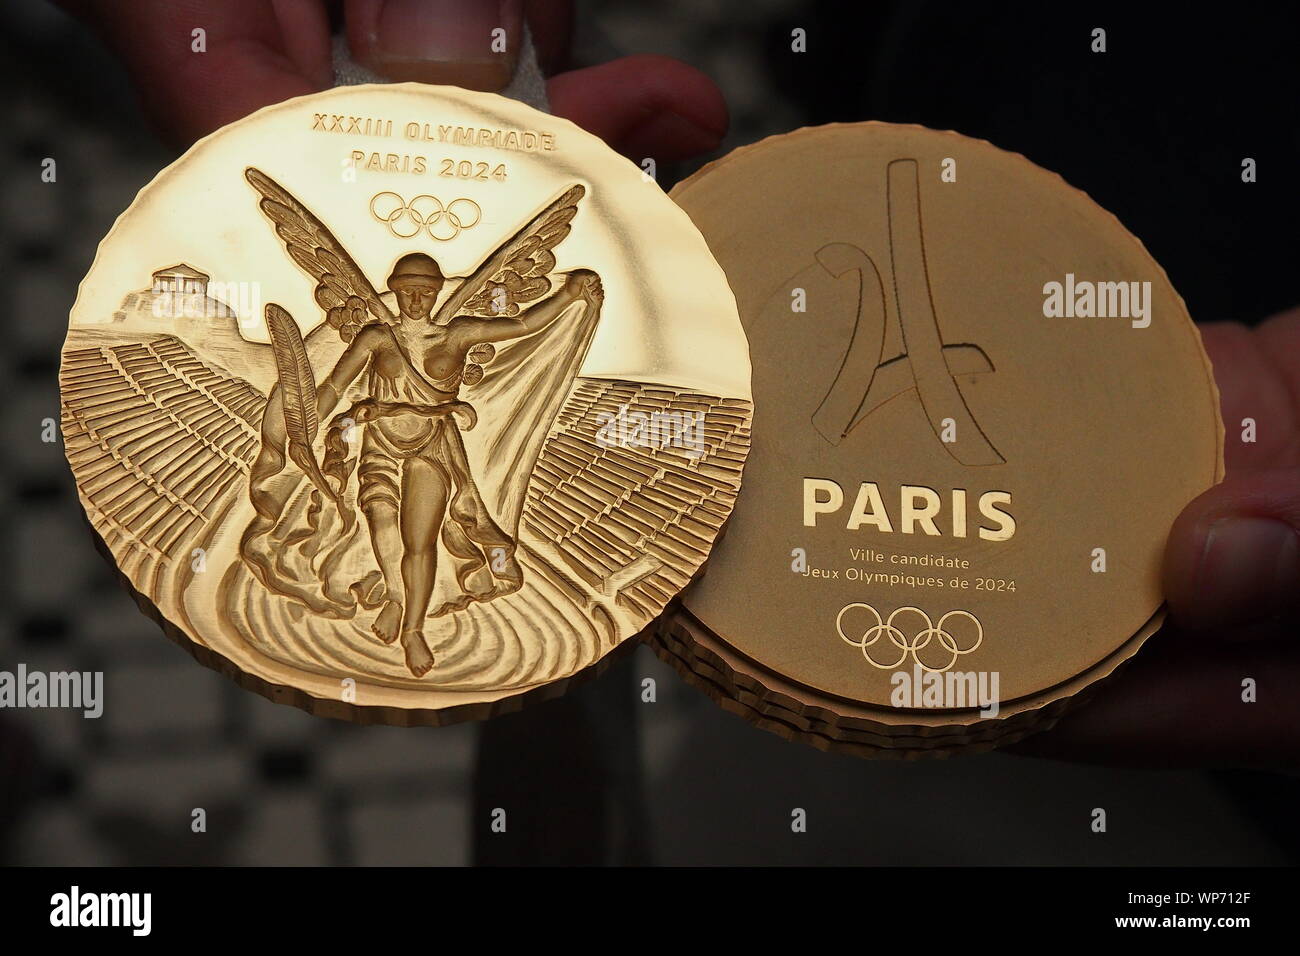 Modelo de las medallas de oro que se utilizará en los Juegos Olímpicos de París 2024 es